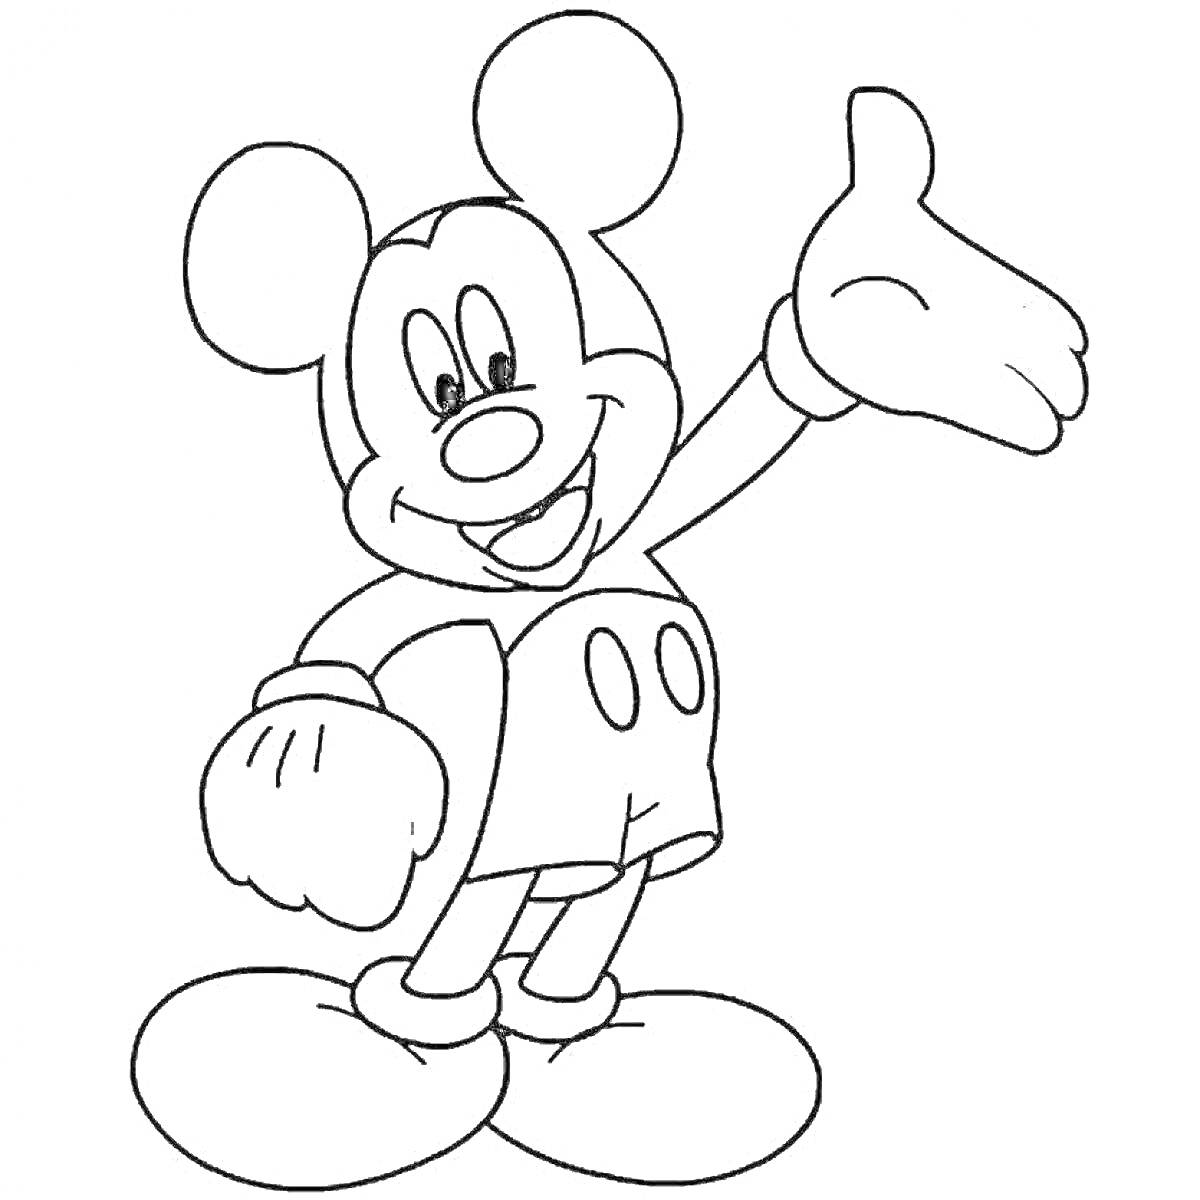 Раскраска Раскраска с Микки Маусом, поднявшим правую руку